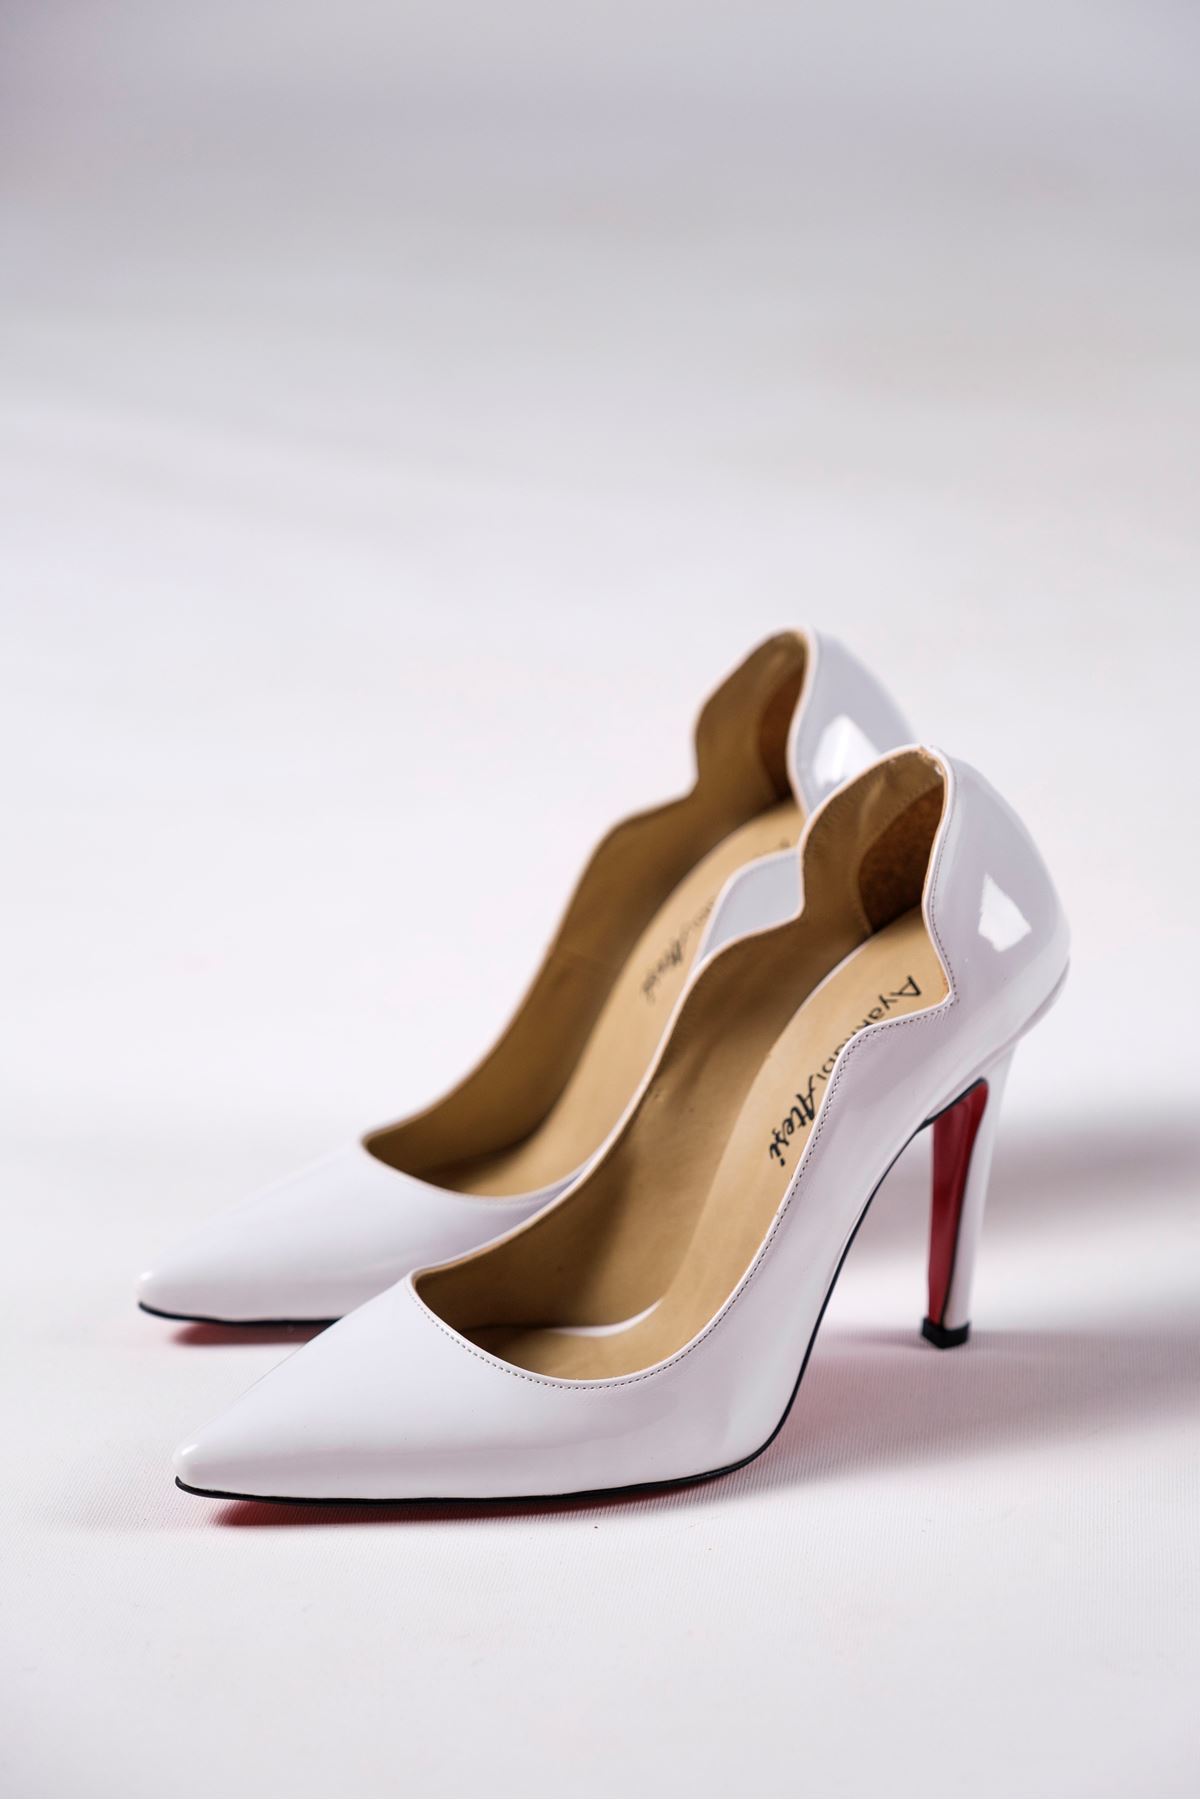 Beyaz Rugan Kadın Topuklu Özel Tasarım Ayakkabı Stiletto Happy